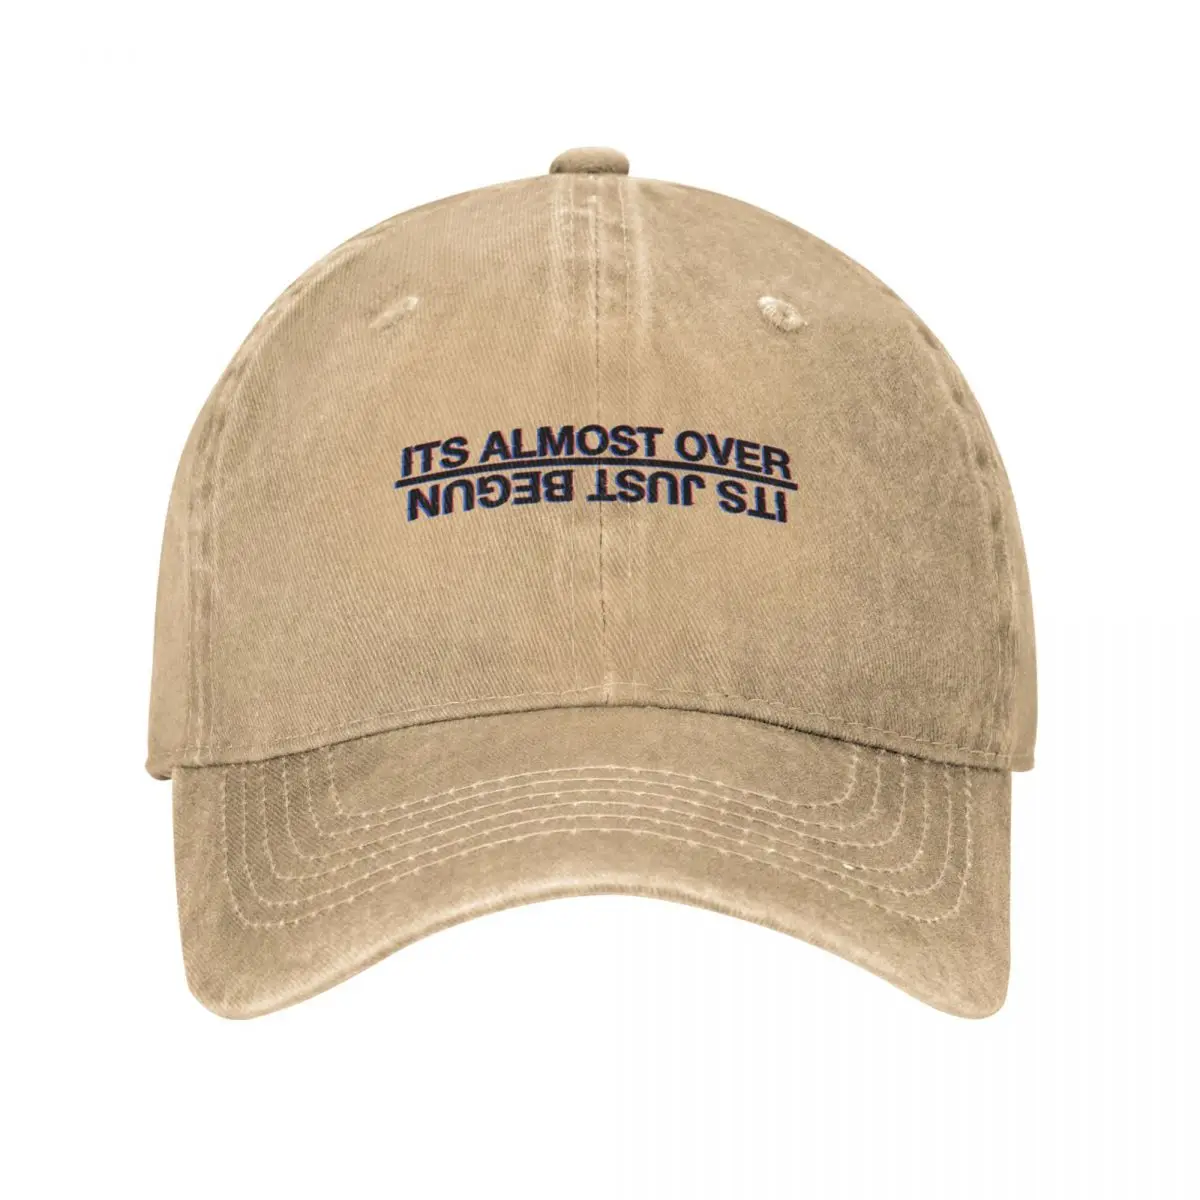 

Its Almost Over, Its Just Begun Cowboy Hat Snapback Cap Caps For Women Men'S